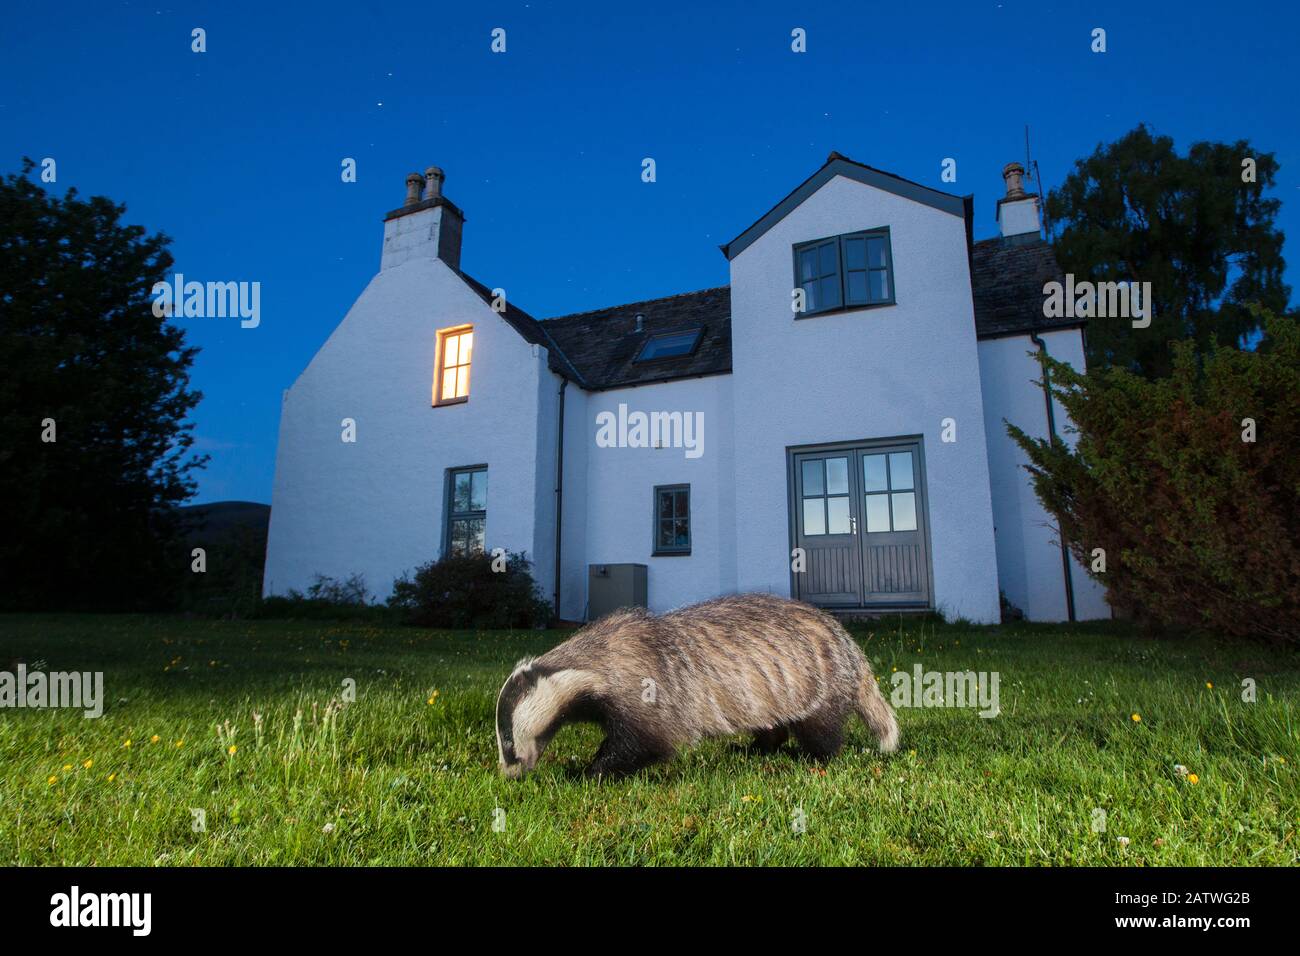 Blaireau européen (Meles mes) de la nourriture devant la maison la nuit. Glenfeshie, Parc National De Cairngorms, Écosse, Royaume-Uni. Banque D'Images